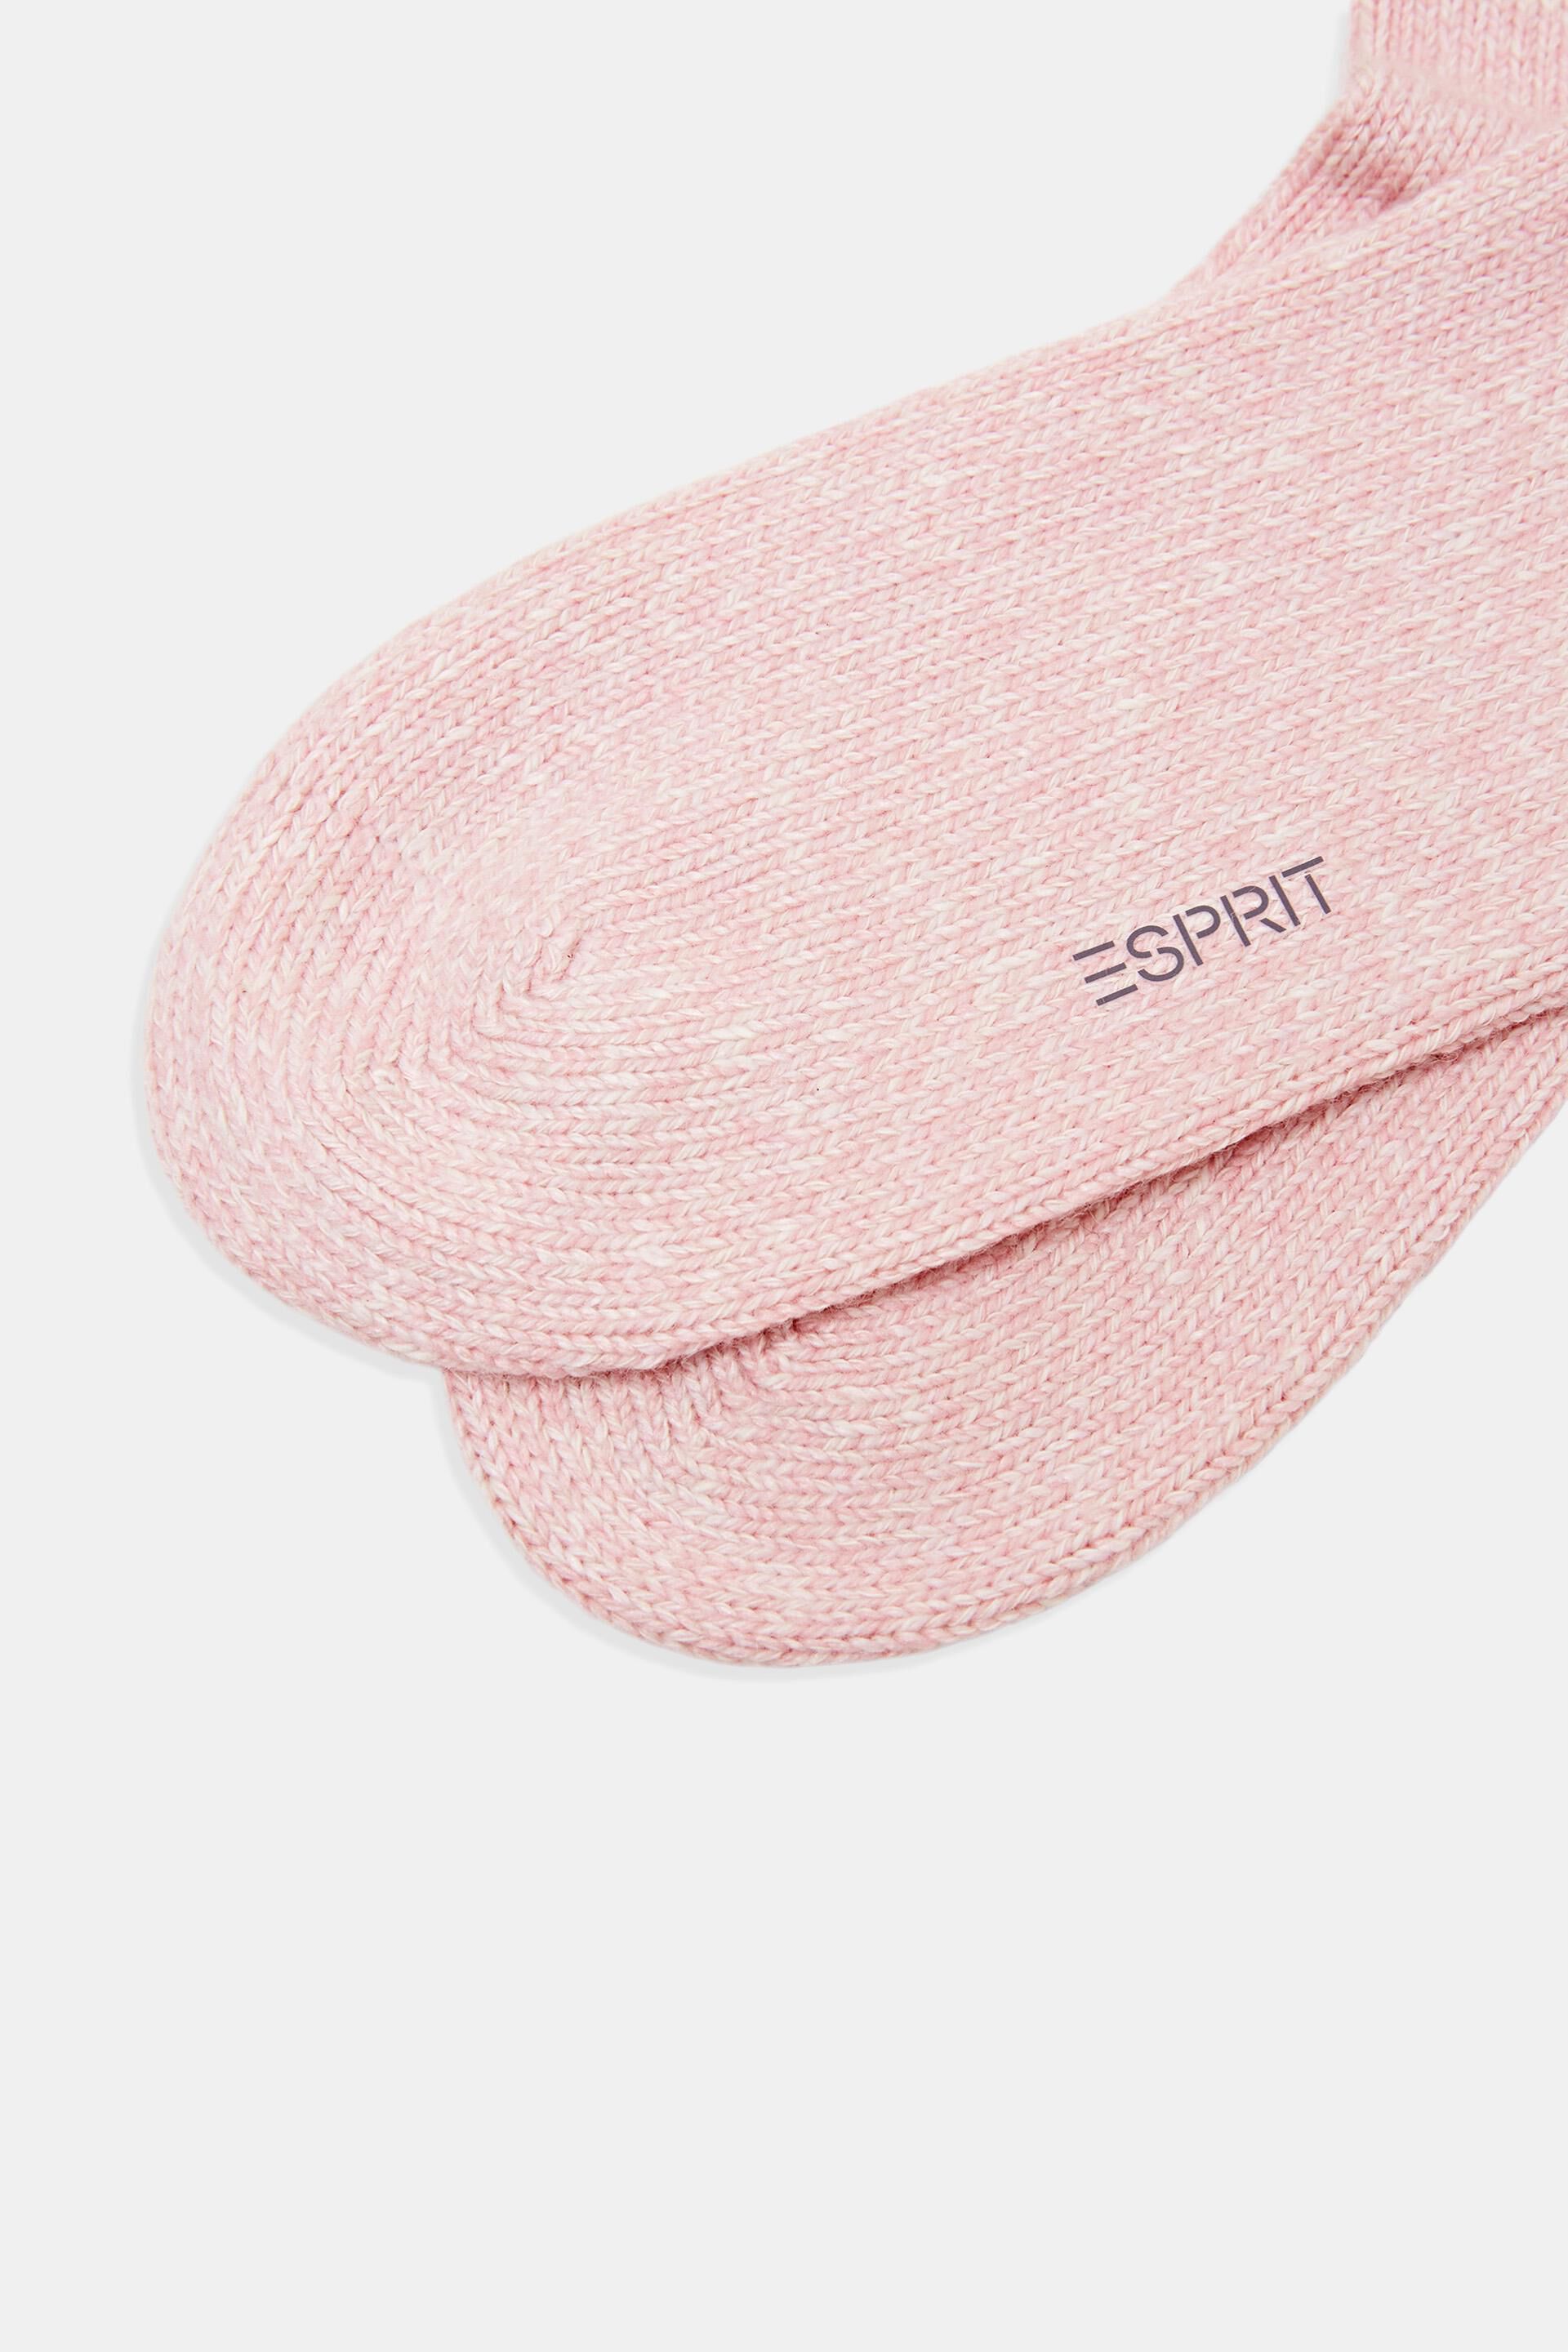 Esprit Online Store Grob gestrickte Stiefelsocken